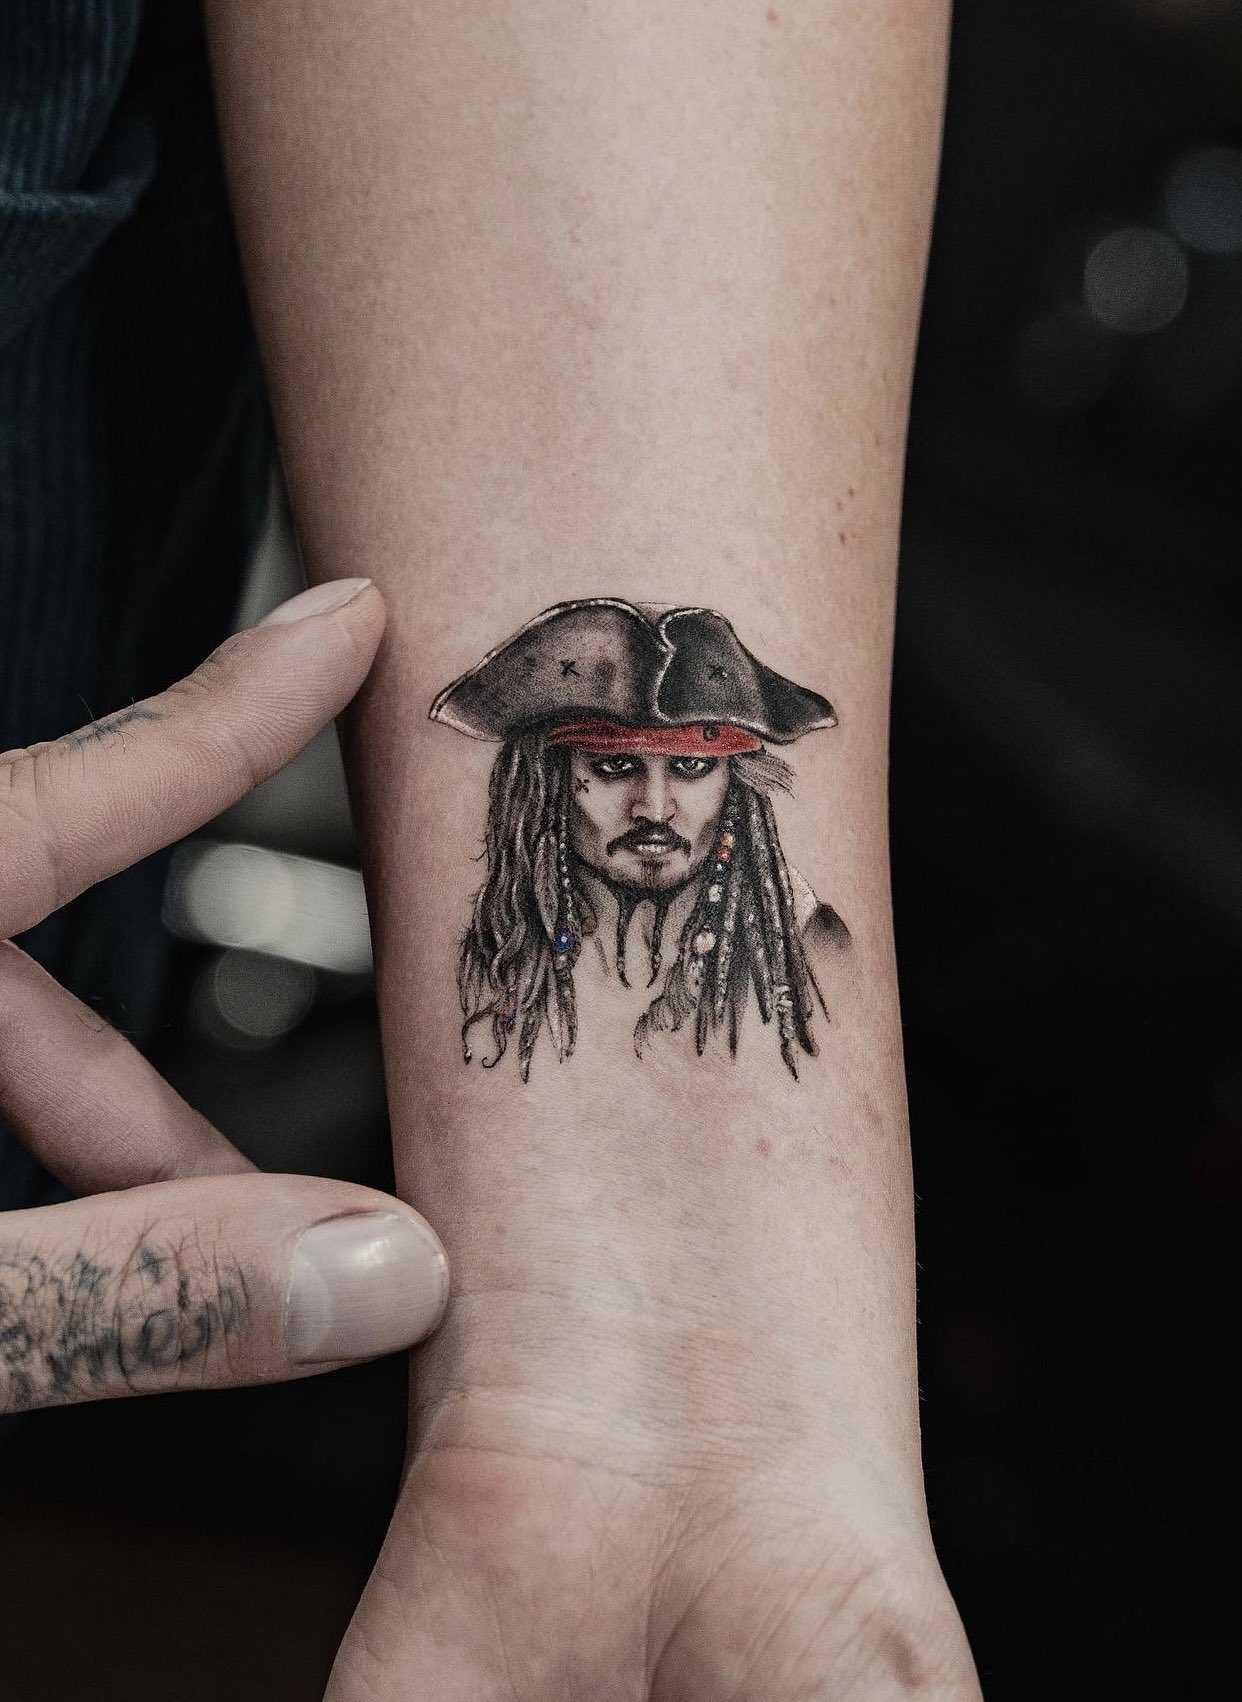 Two Hands Tattoo  Jack Sparrow  tattoo tattoos ink tat black  sullenartcollective sullen realistictattoo blacktattoo dotwork  tattooidea engraving tattooflash tattoosofinstagram tattoolife  tattooart tattoodesign artist 